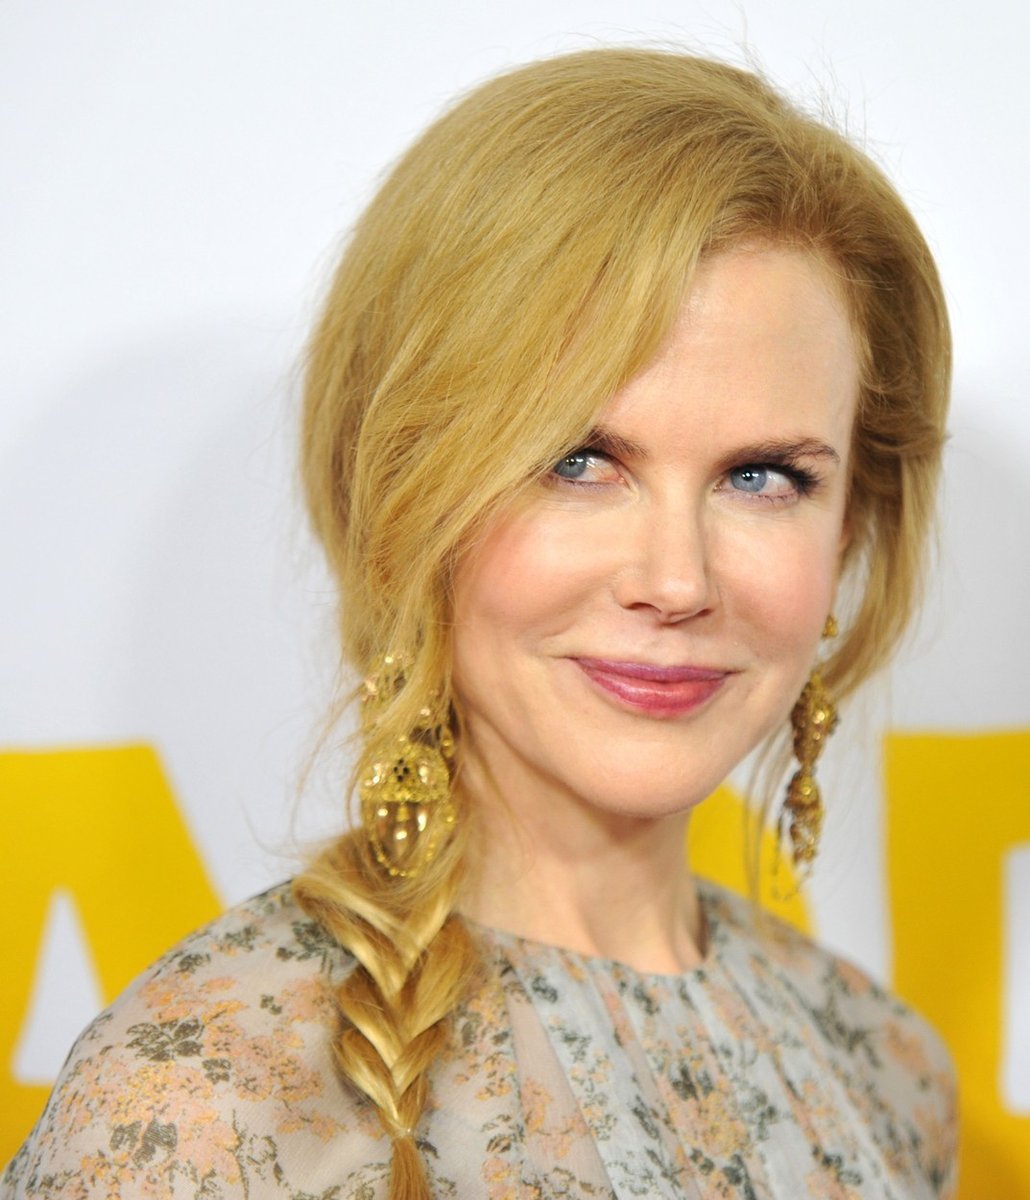 I porcelánová kráska, jako je Nicole Kidman (51), bojuje se svými komplexy ohledně vzhledu. V touze vzepřít se času vyzkoušela botox, jak přiznala. Po první zkušenosti ale uznala, že nic podobného už zkoušet nebude. „Jednou jsem zkusila botox, ale už nikdy víc. Alespoň už mohu hýbat obličejem,“ řekla oscarová herečka